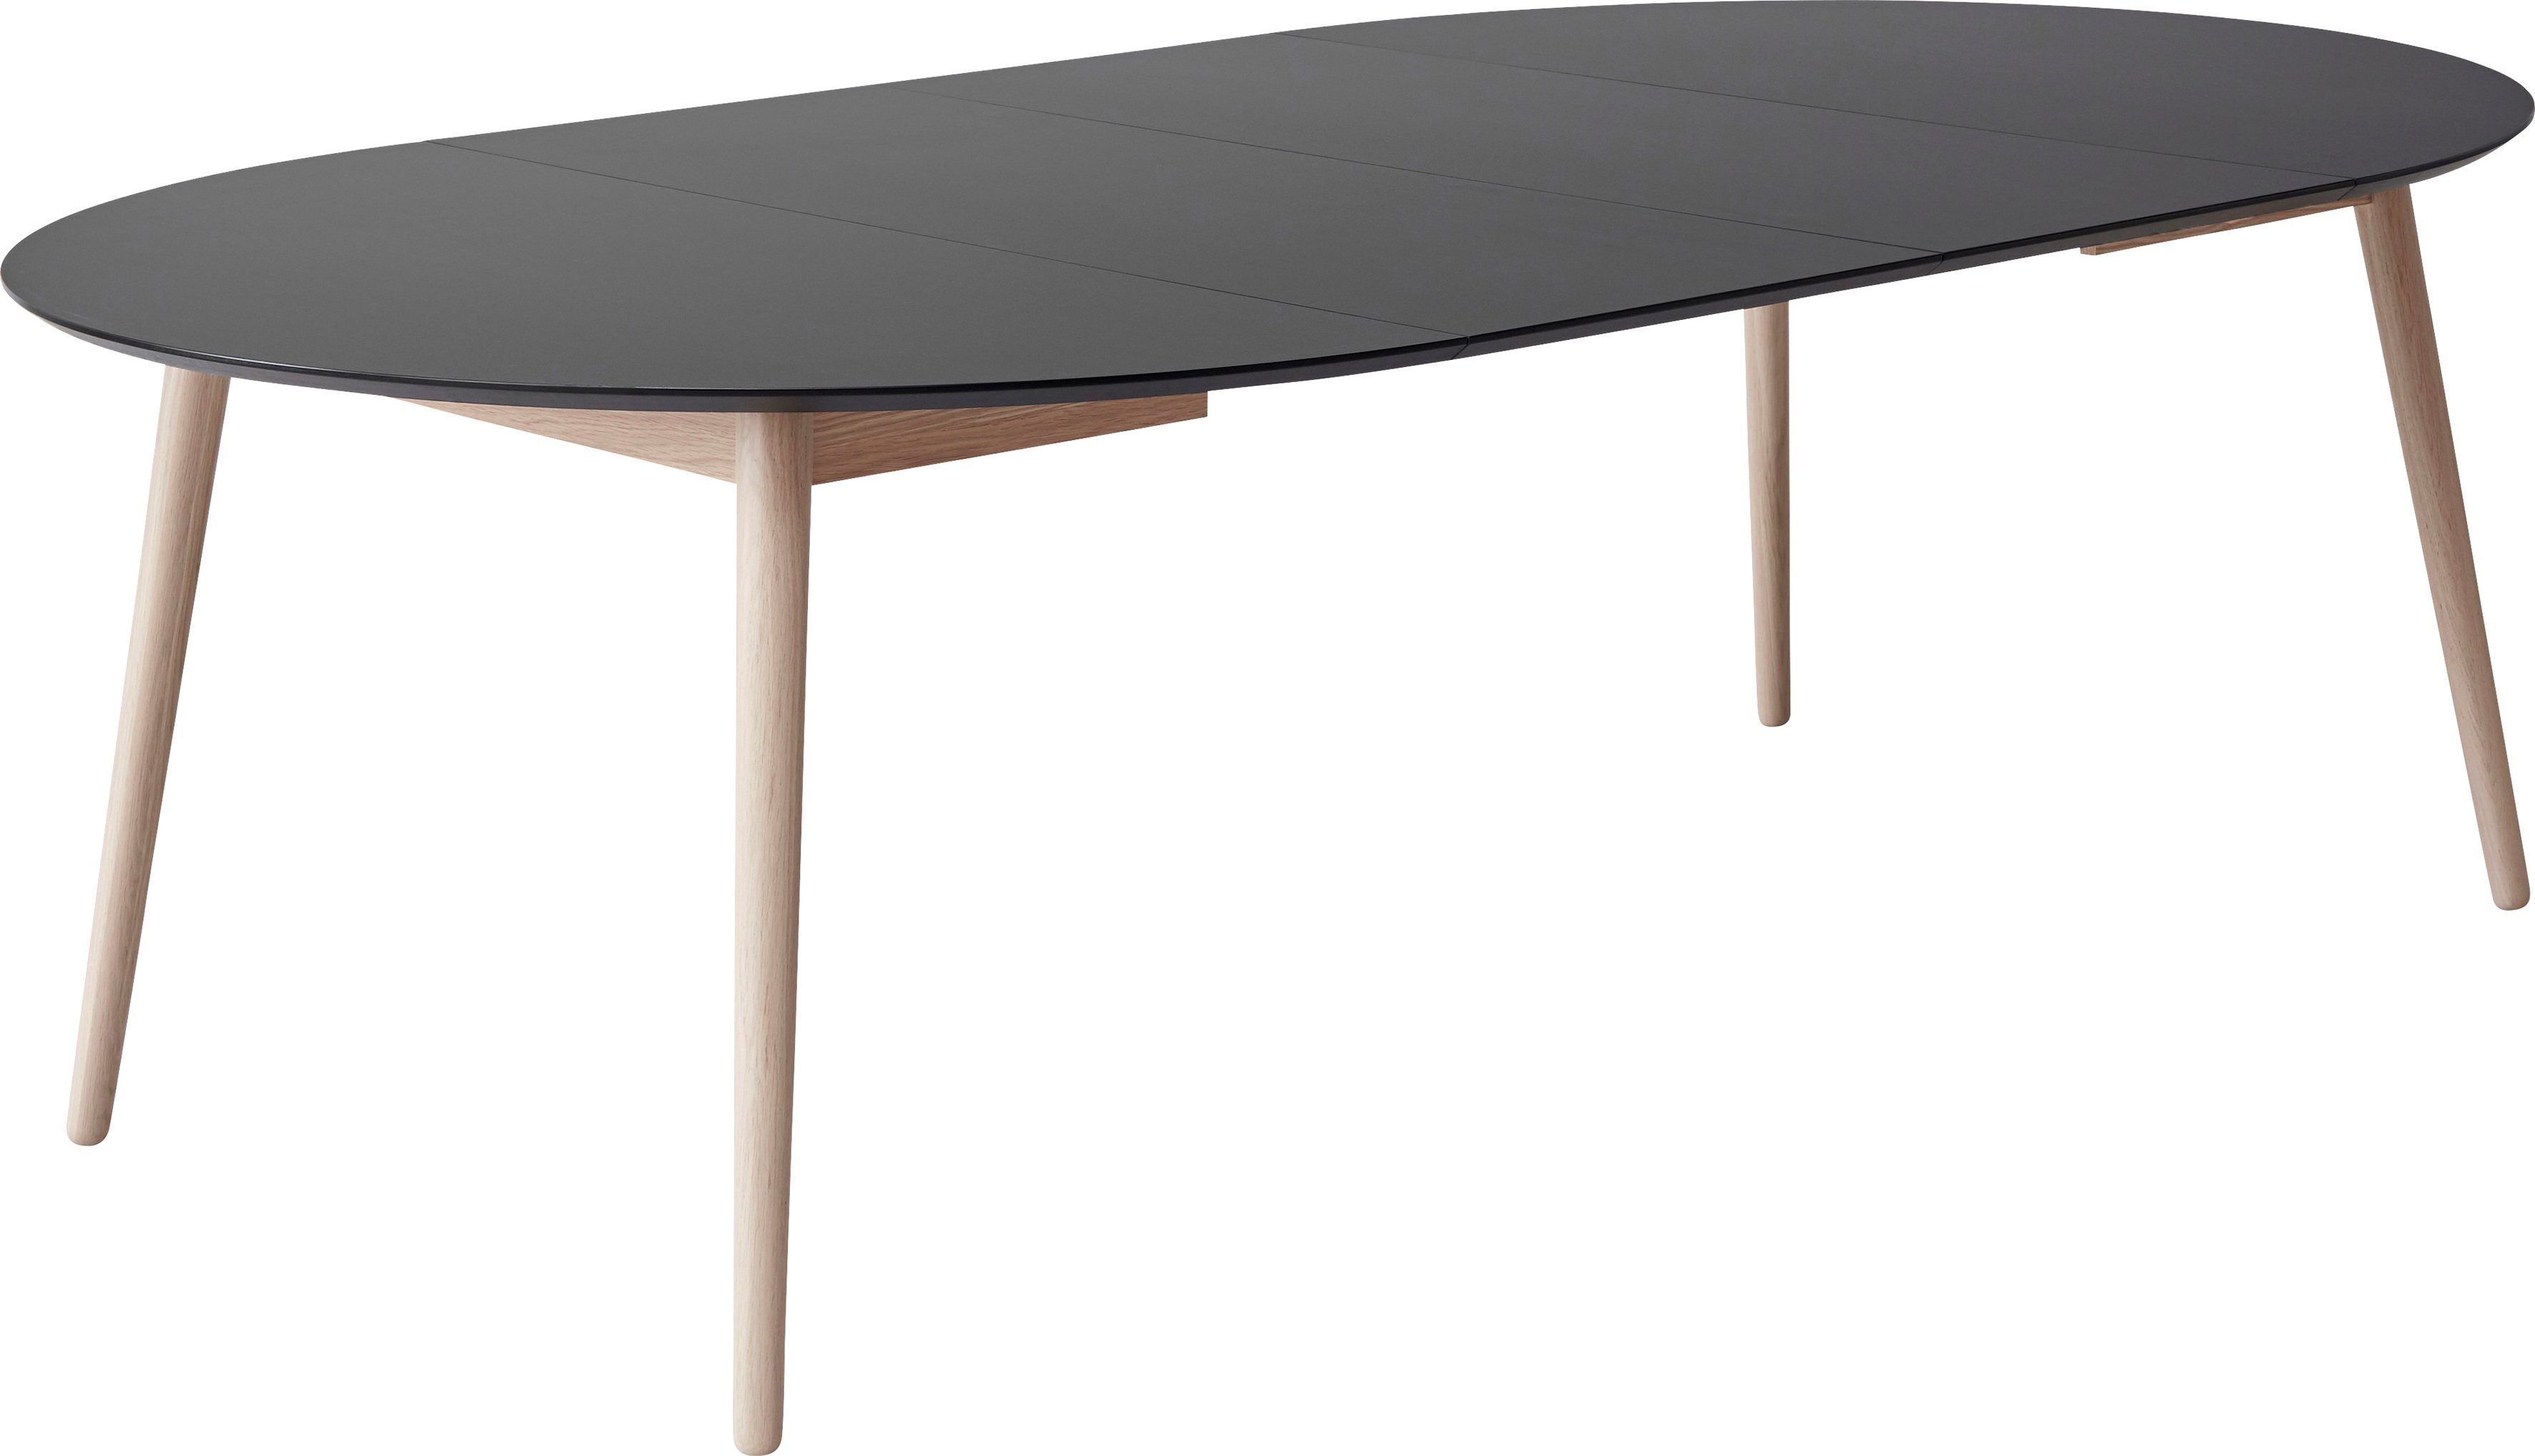 Hammel Furniture Esstisch Tischplatte runde Meza Massivholzgestell Ø135(231) by aus Graphit Hammel, MDF/Laminat, cm